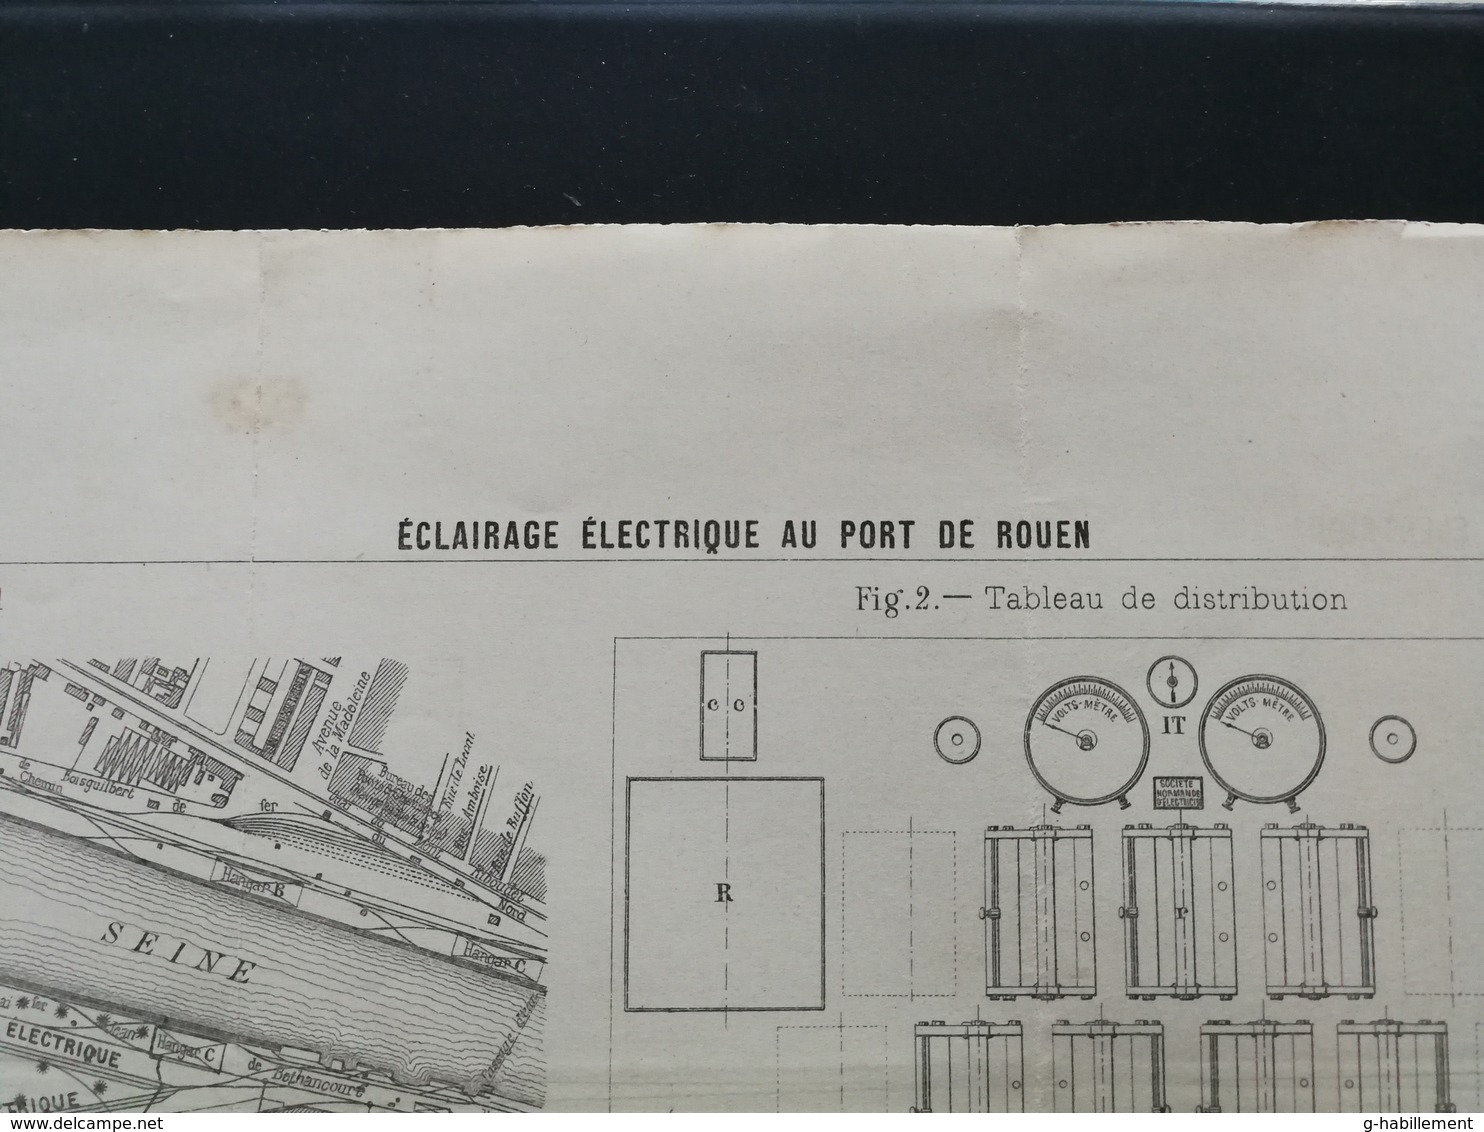 ANNALES DES PONTS Et CHAUSSEES (Dep 76) - Plan D'Eclairage électrique Au Port De Rouen - Imp L.Courtier 1898 (CLE68) - Machines